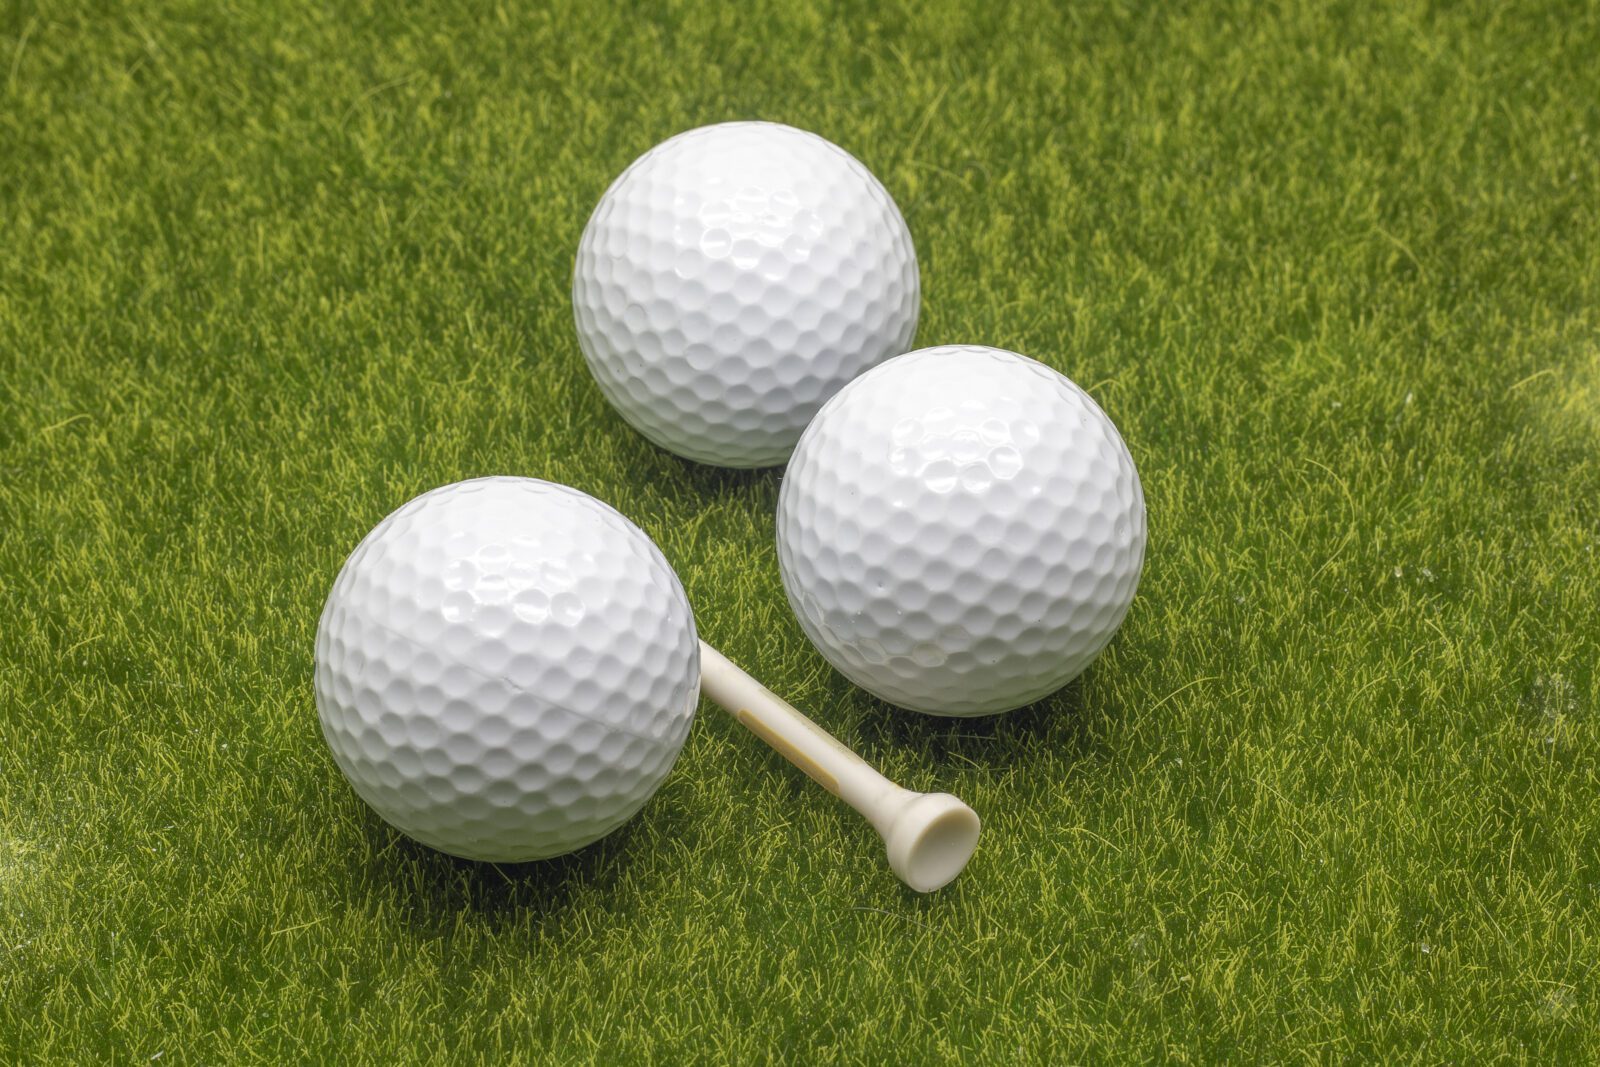 Best Golf Balls for High Handicap Players